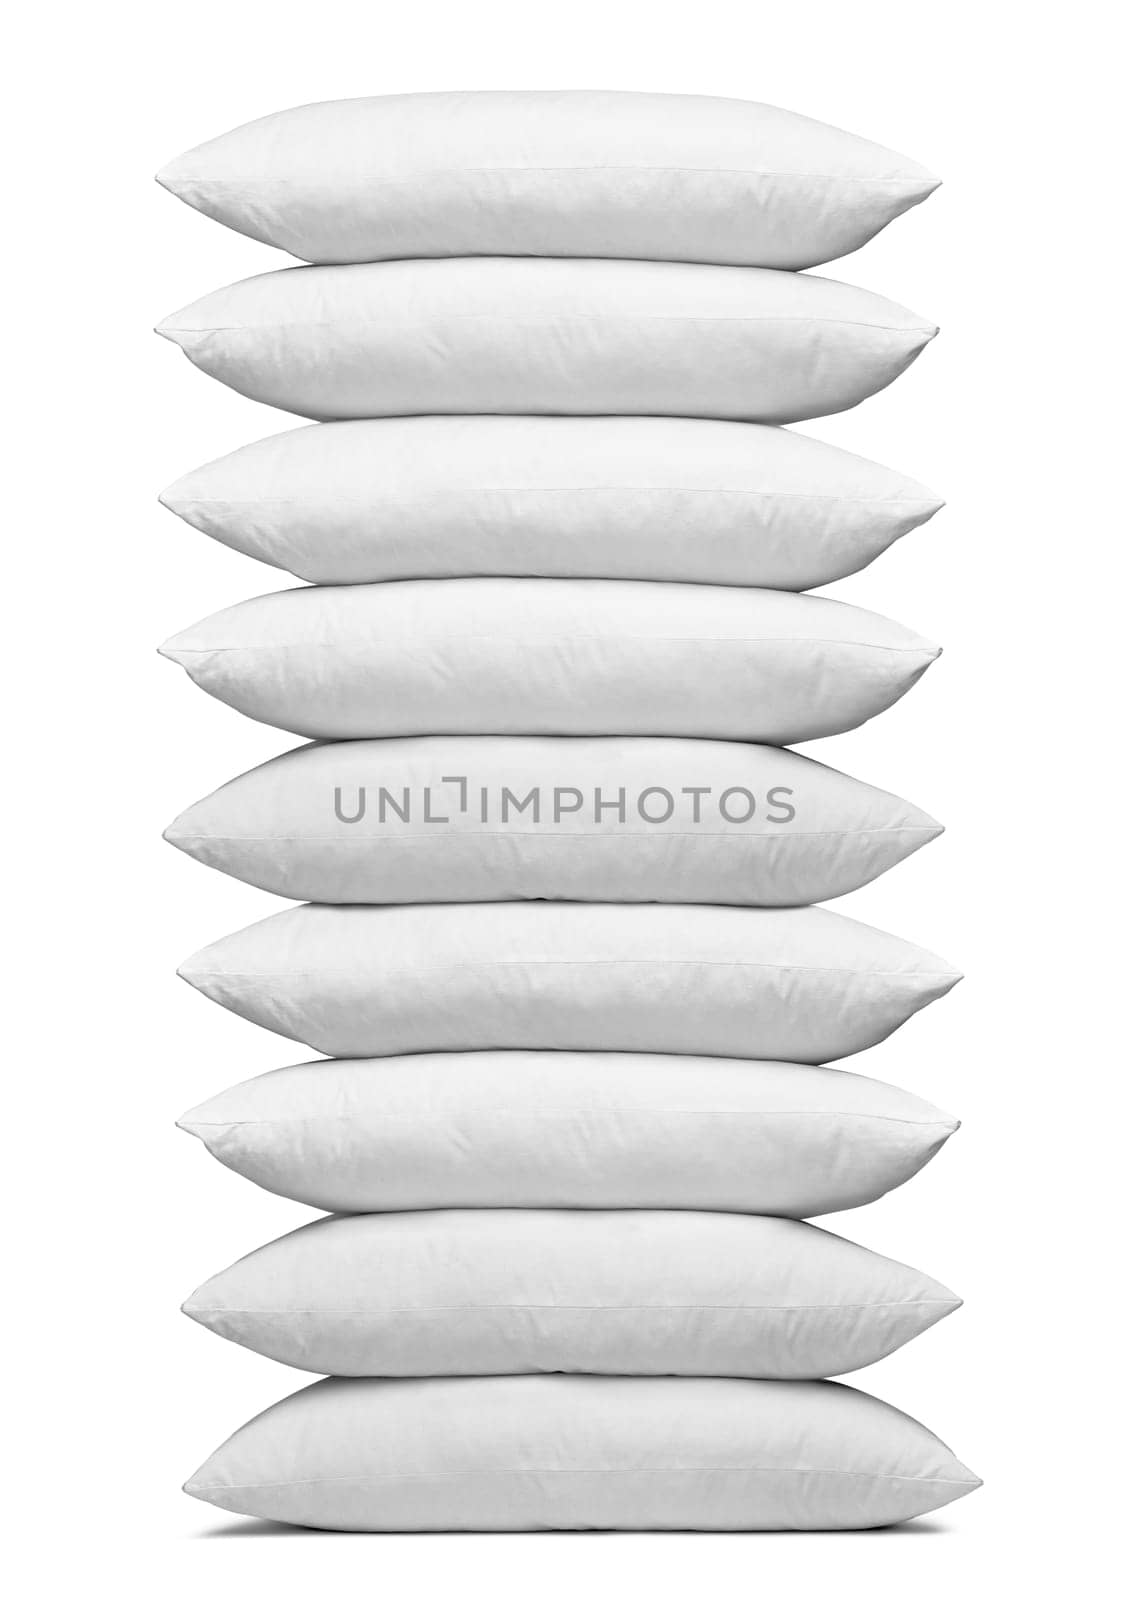 white pillow bedding sleep by Picsfive